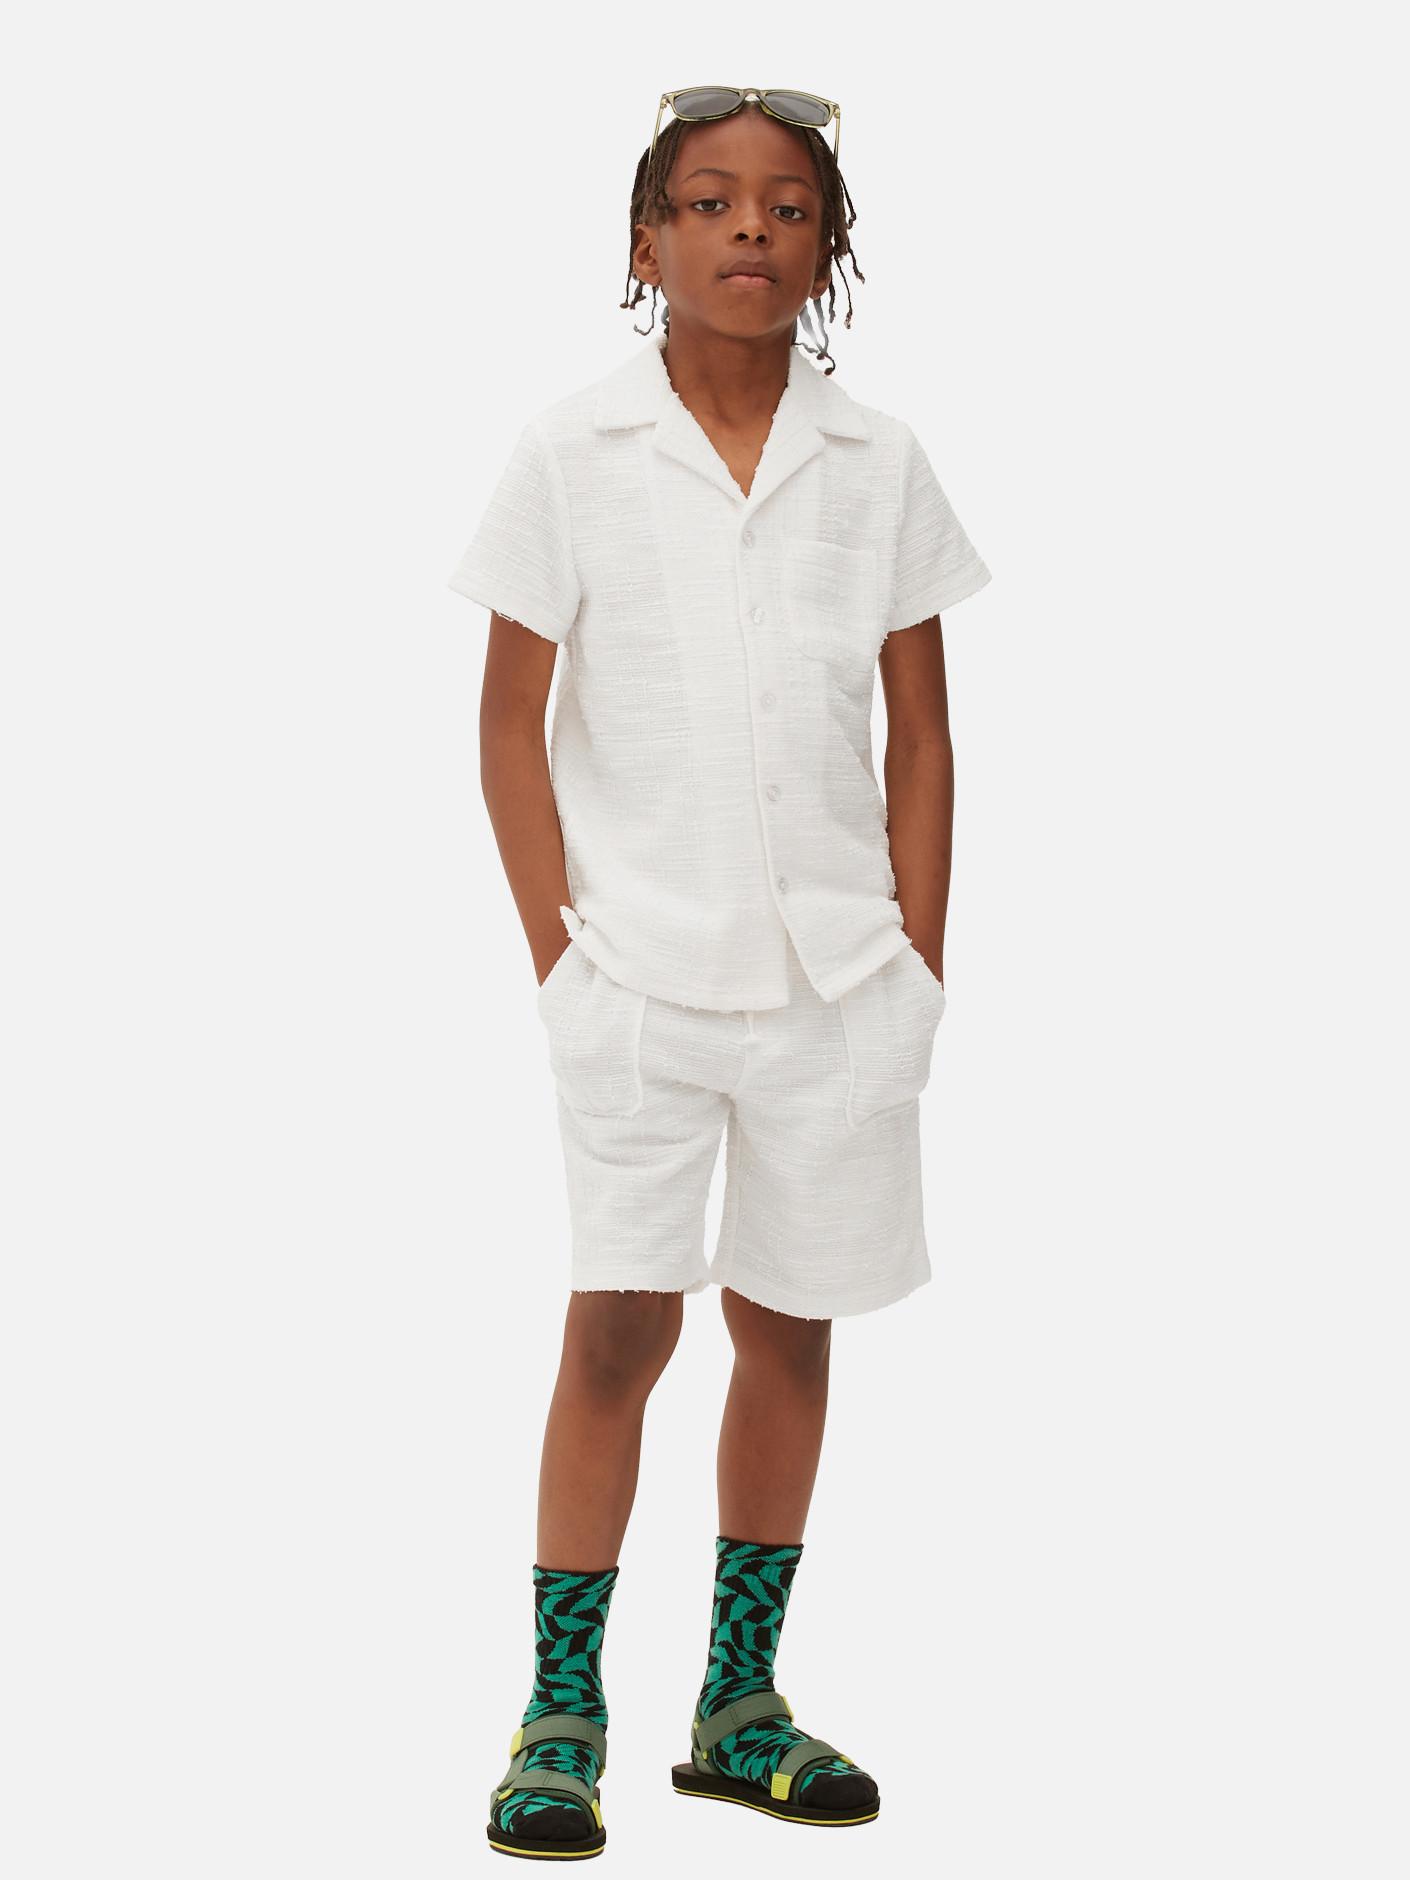 Child wears white shirt and chino shorts